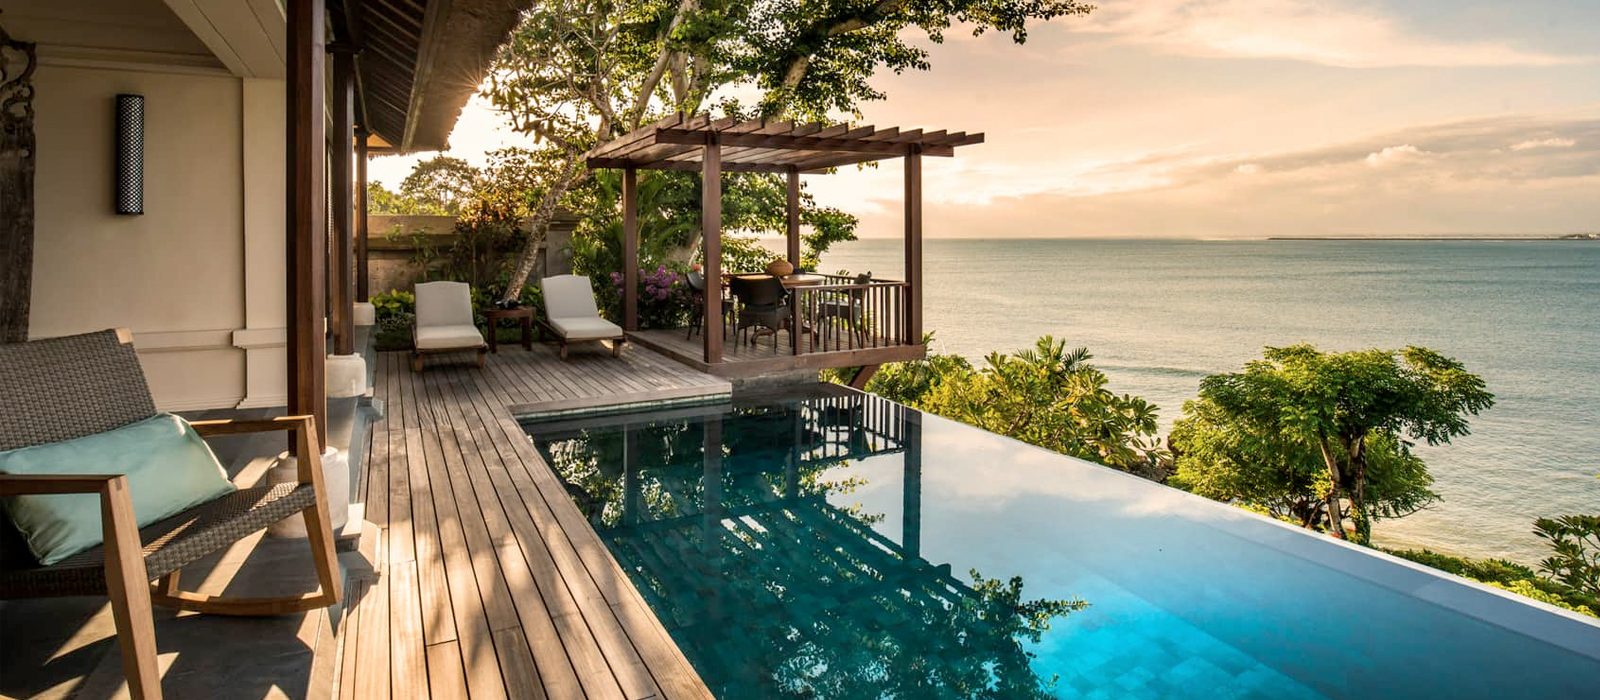 Luxury Bali Holiday Packages Four Seasons Bali At Jimbaran Header